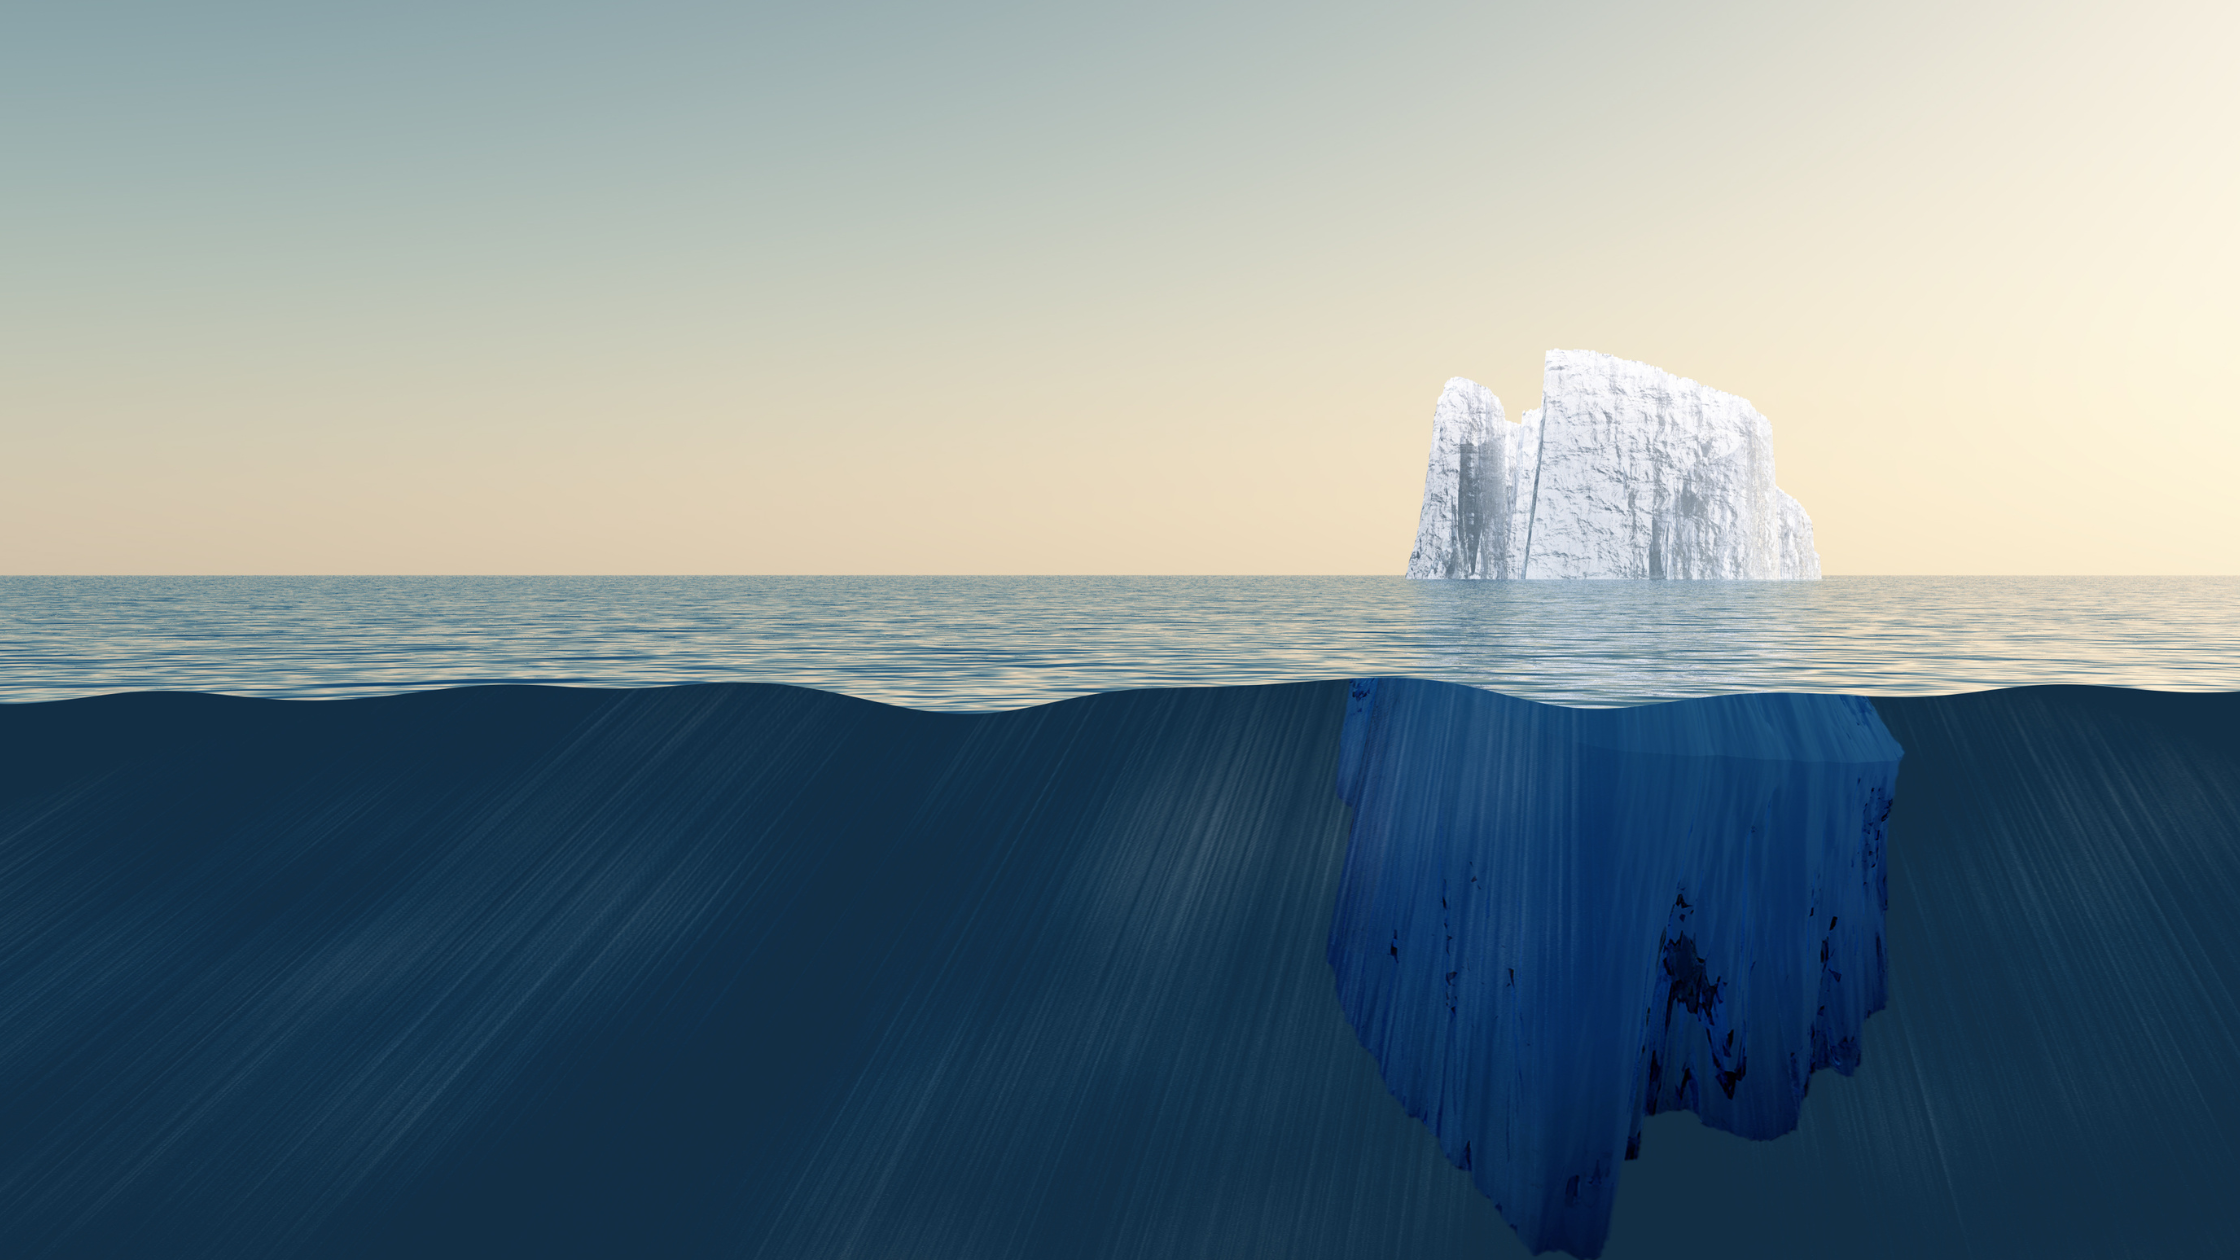 ¿Es tu organización el Titanic y no estás viendo el iceberg del acoso sexual laboral?